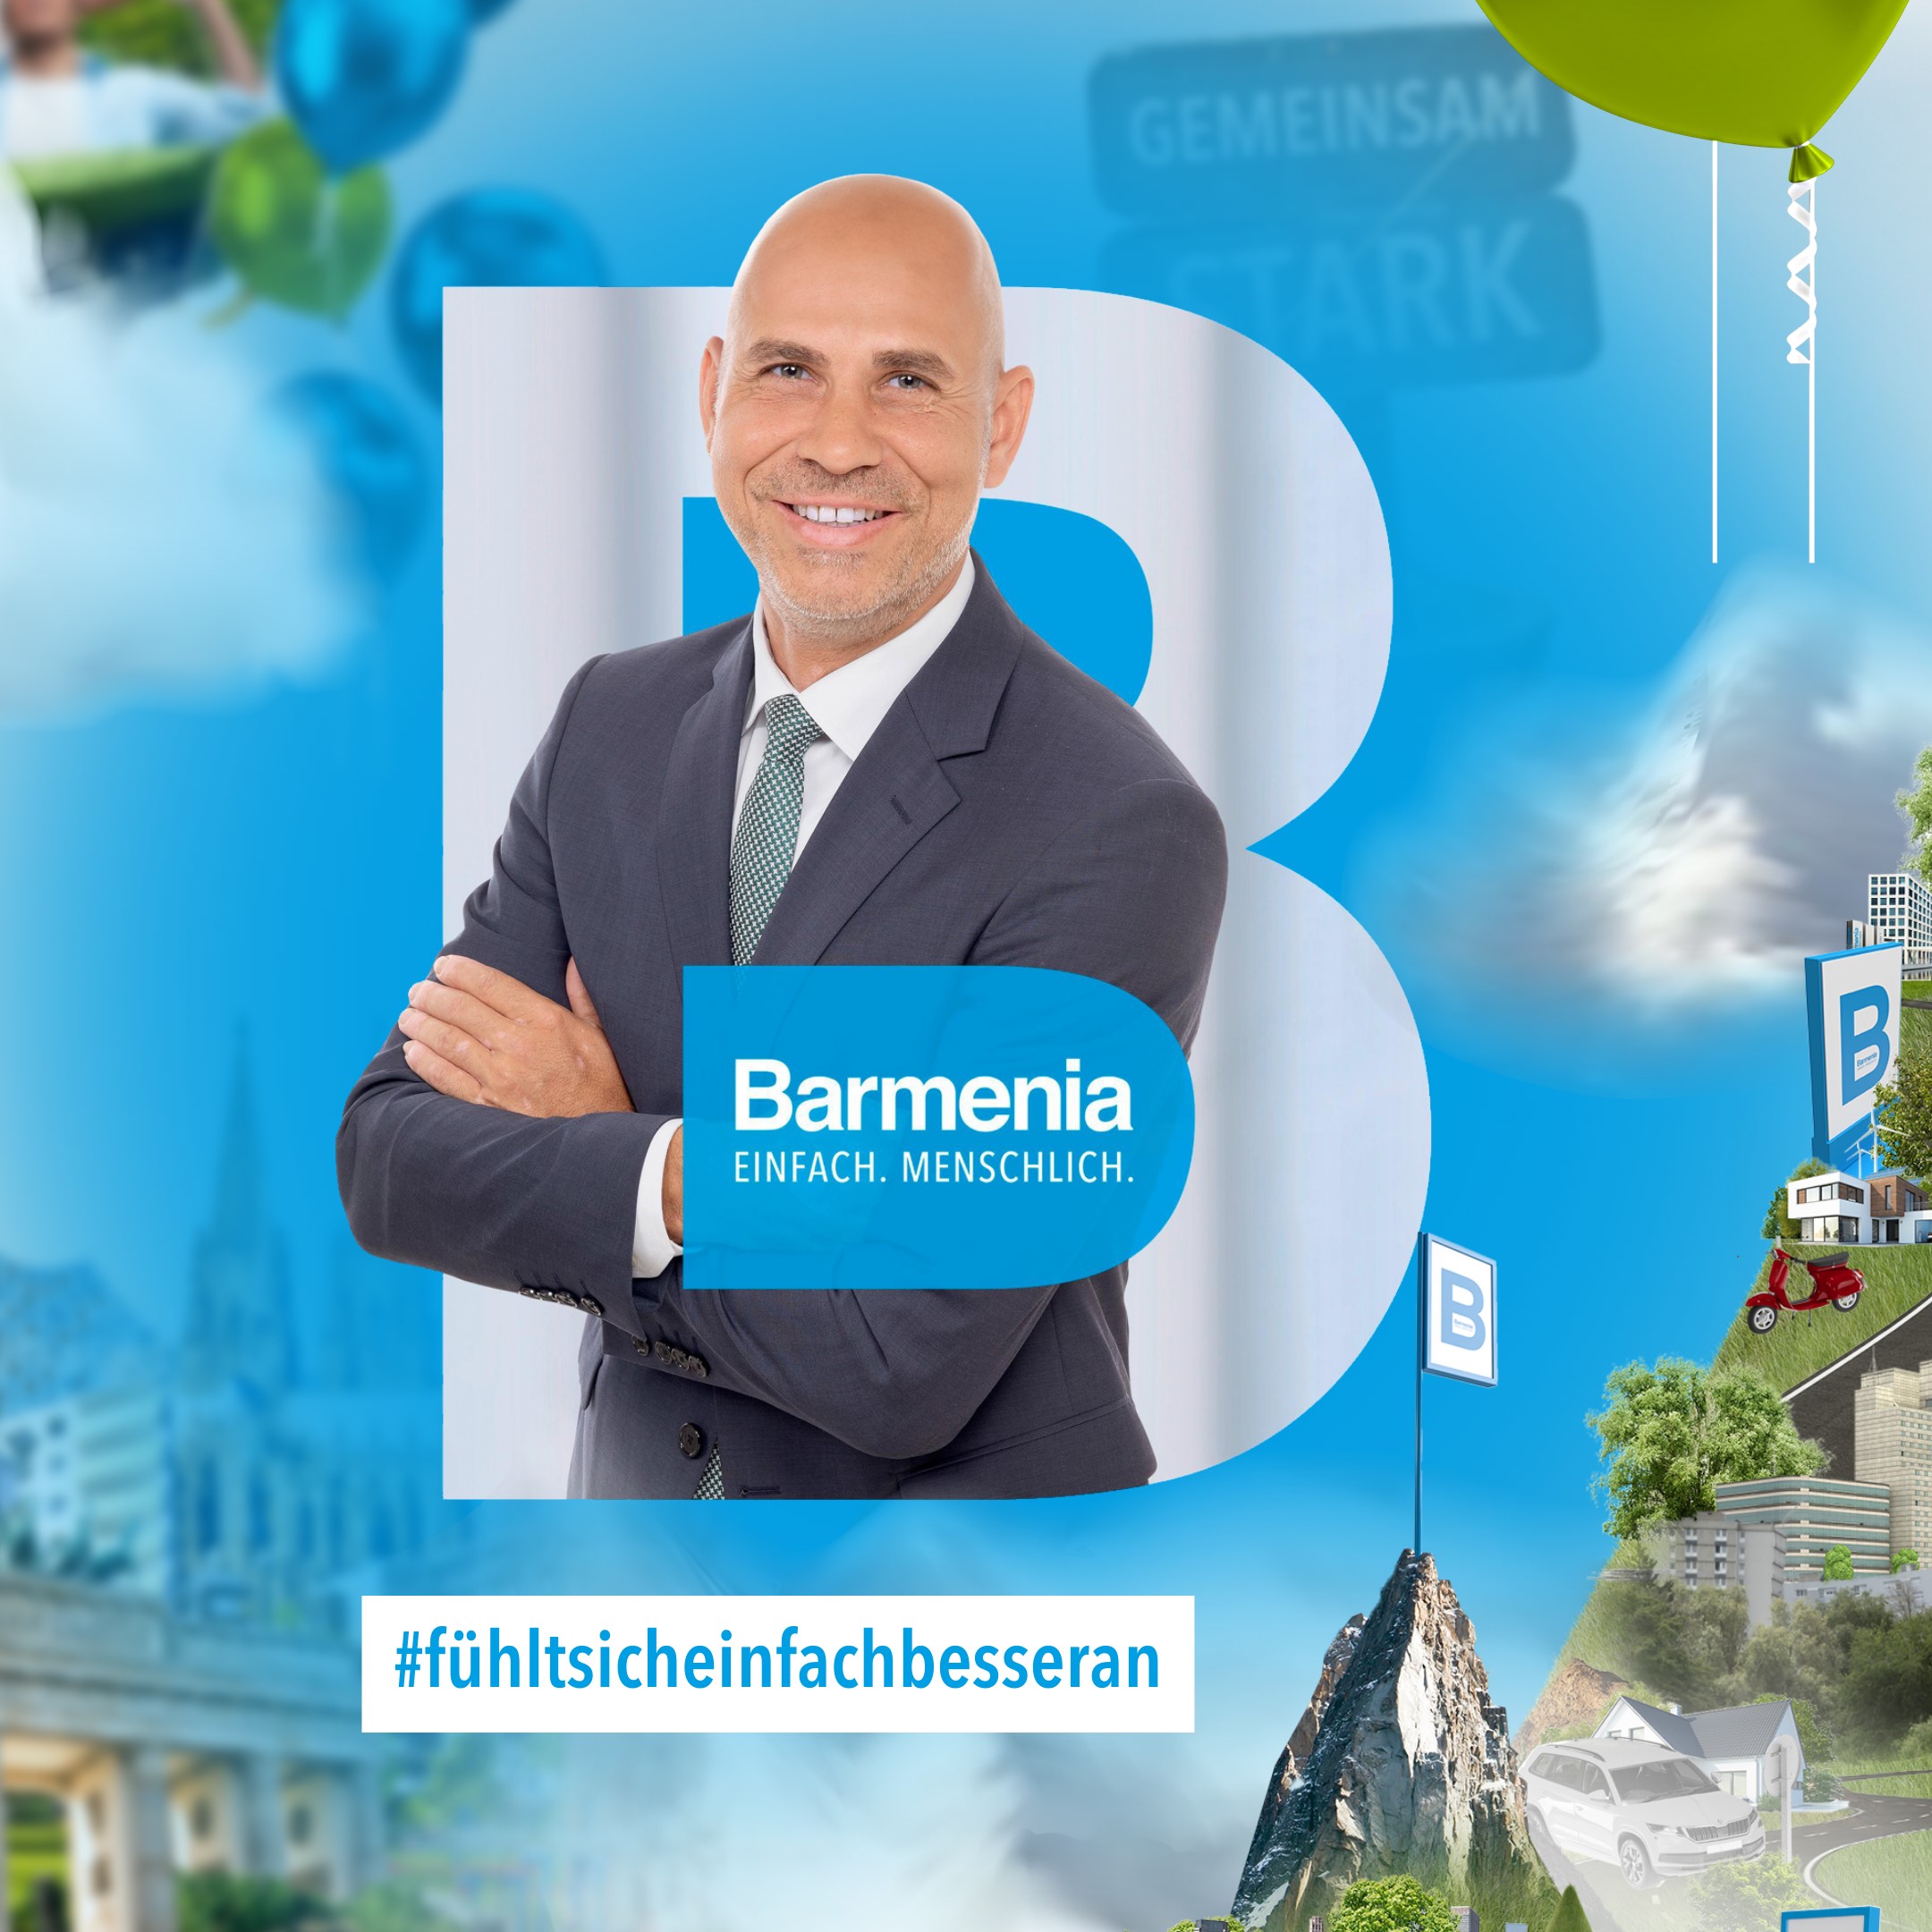 Andreas Schulz-Engelhard leitet das Vertriebszentrum Erfurt der Barmenia Versicherung für die Belange in Thüringen.